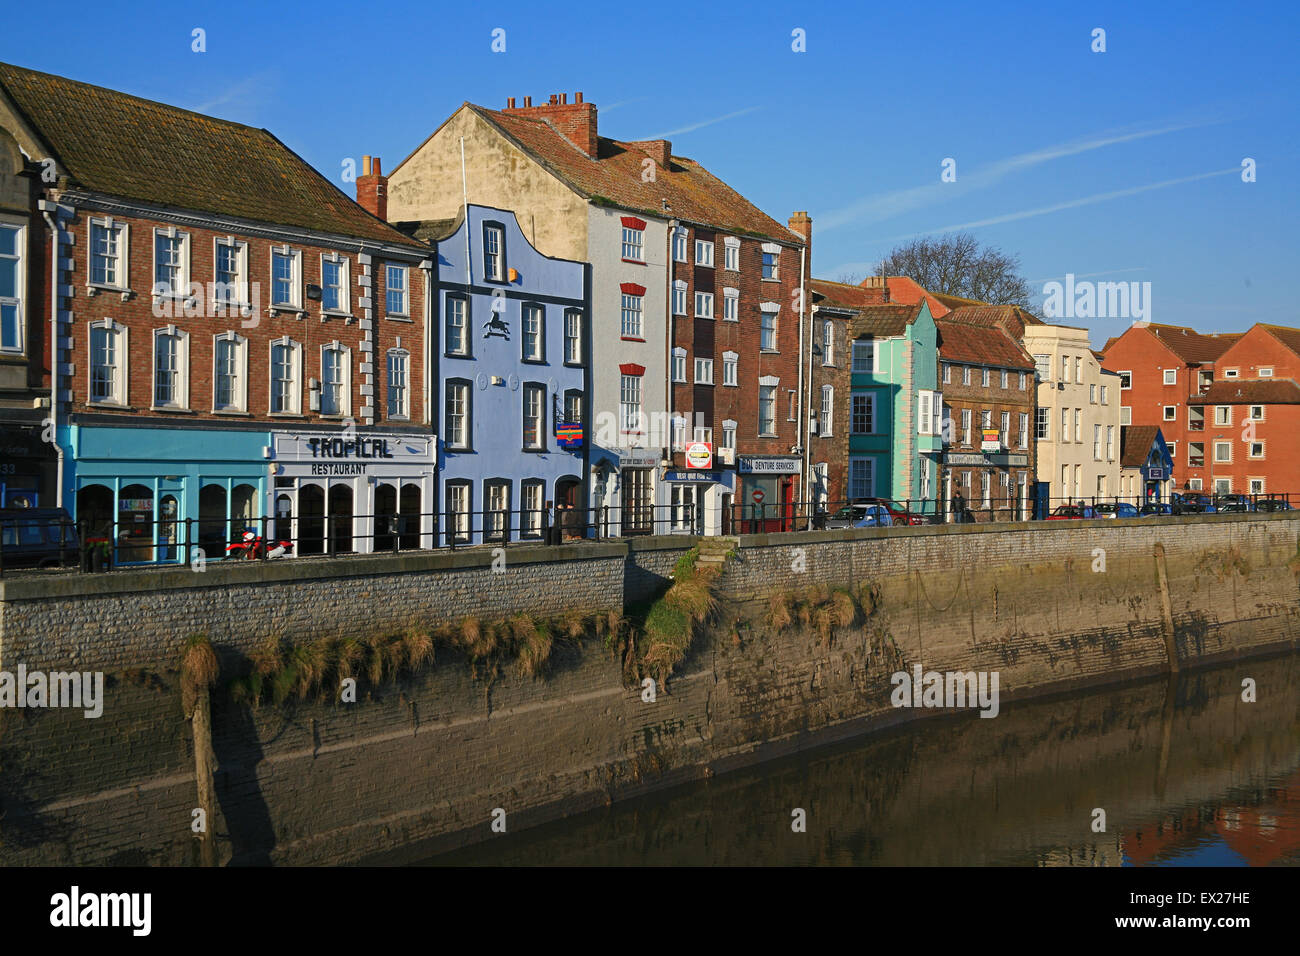 Propriétés historiques le long de la rivière Parrett à Bridgwater, Somerset, England, UK Banque D'Images